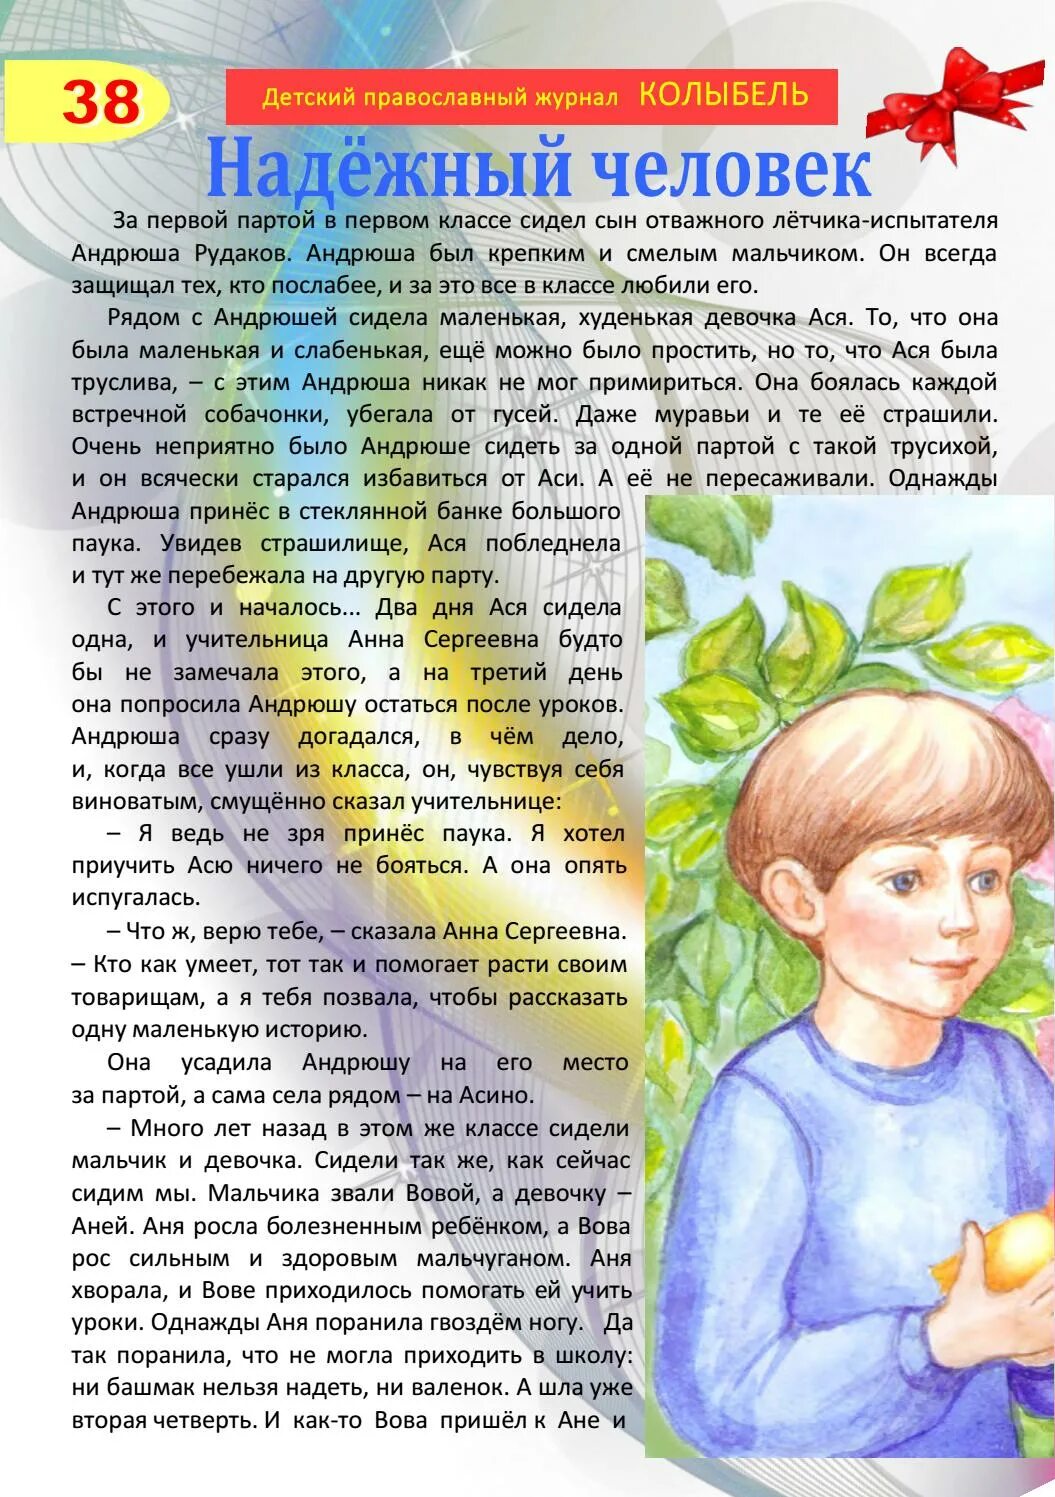 Андрюша рудаков был. Колыбель журнал детский православный. Андрюша Рудаков был крепким и смелым мальчиком.